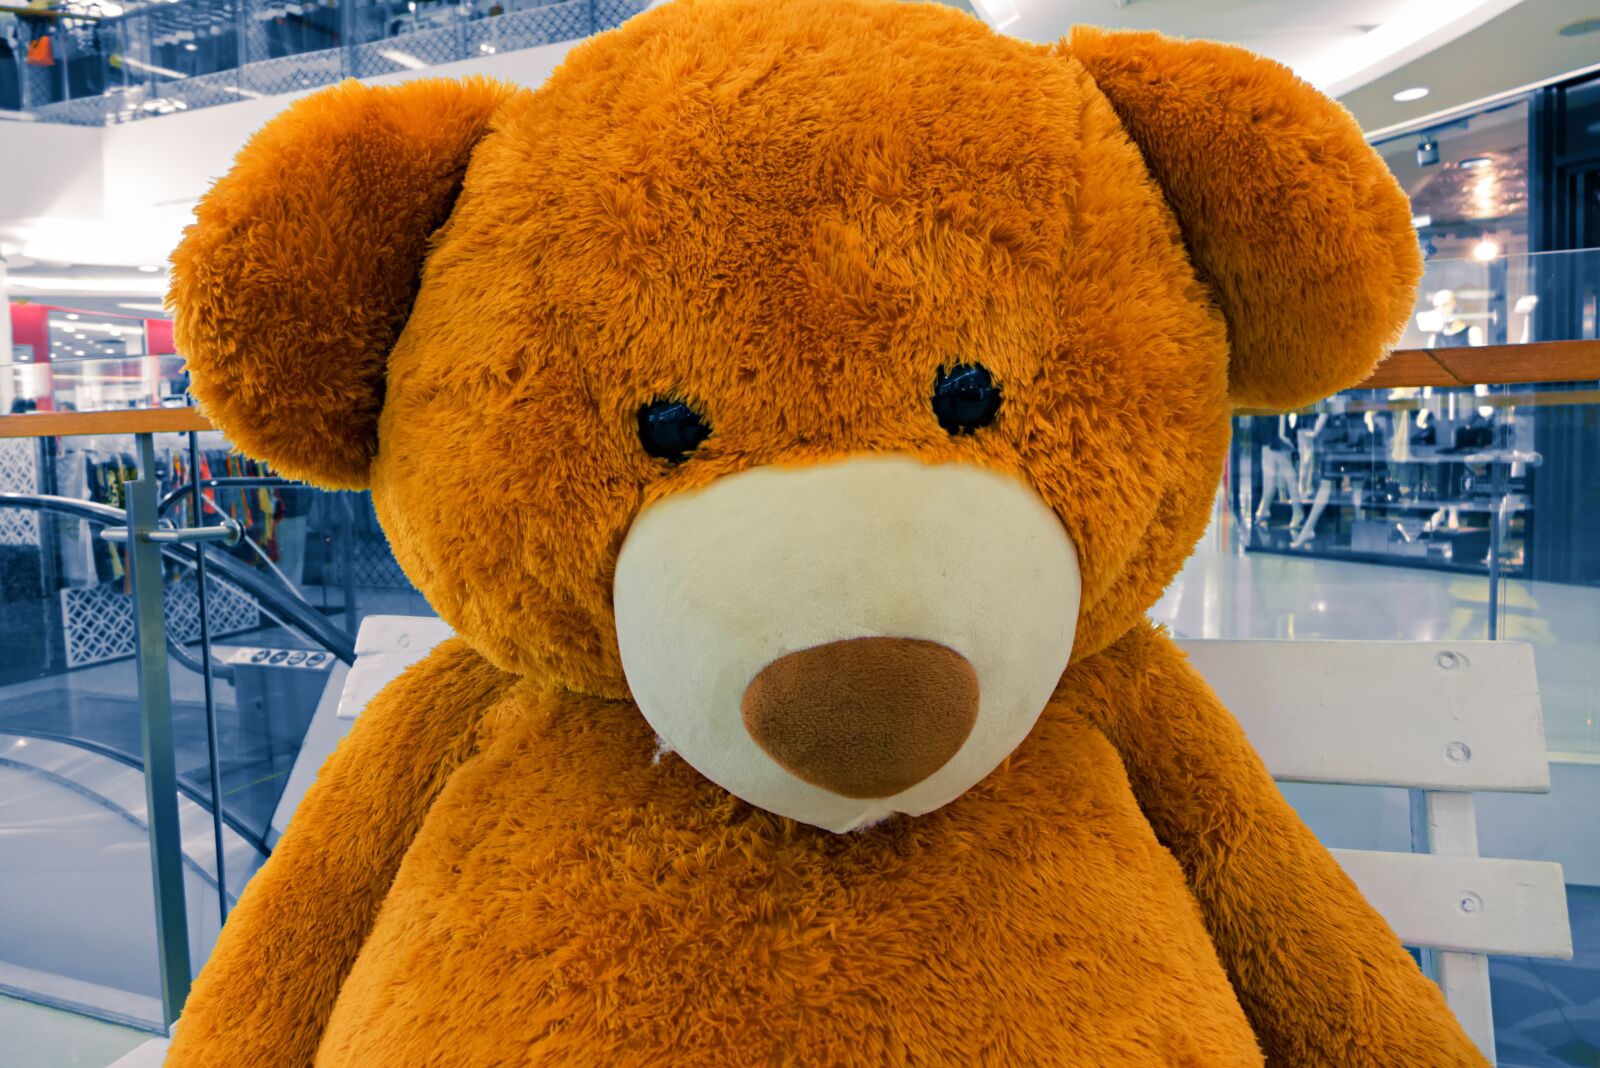 Panasonic Lumix DMC-LX7 sample photo. Teddy bear, teddy, toys photography